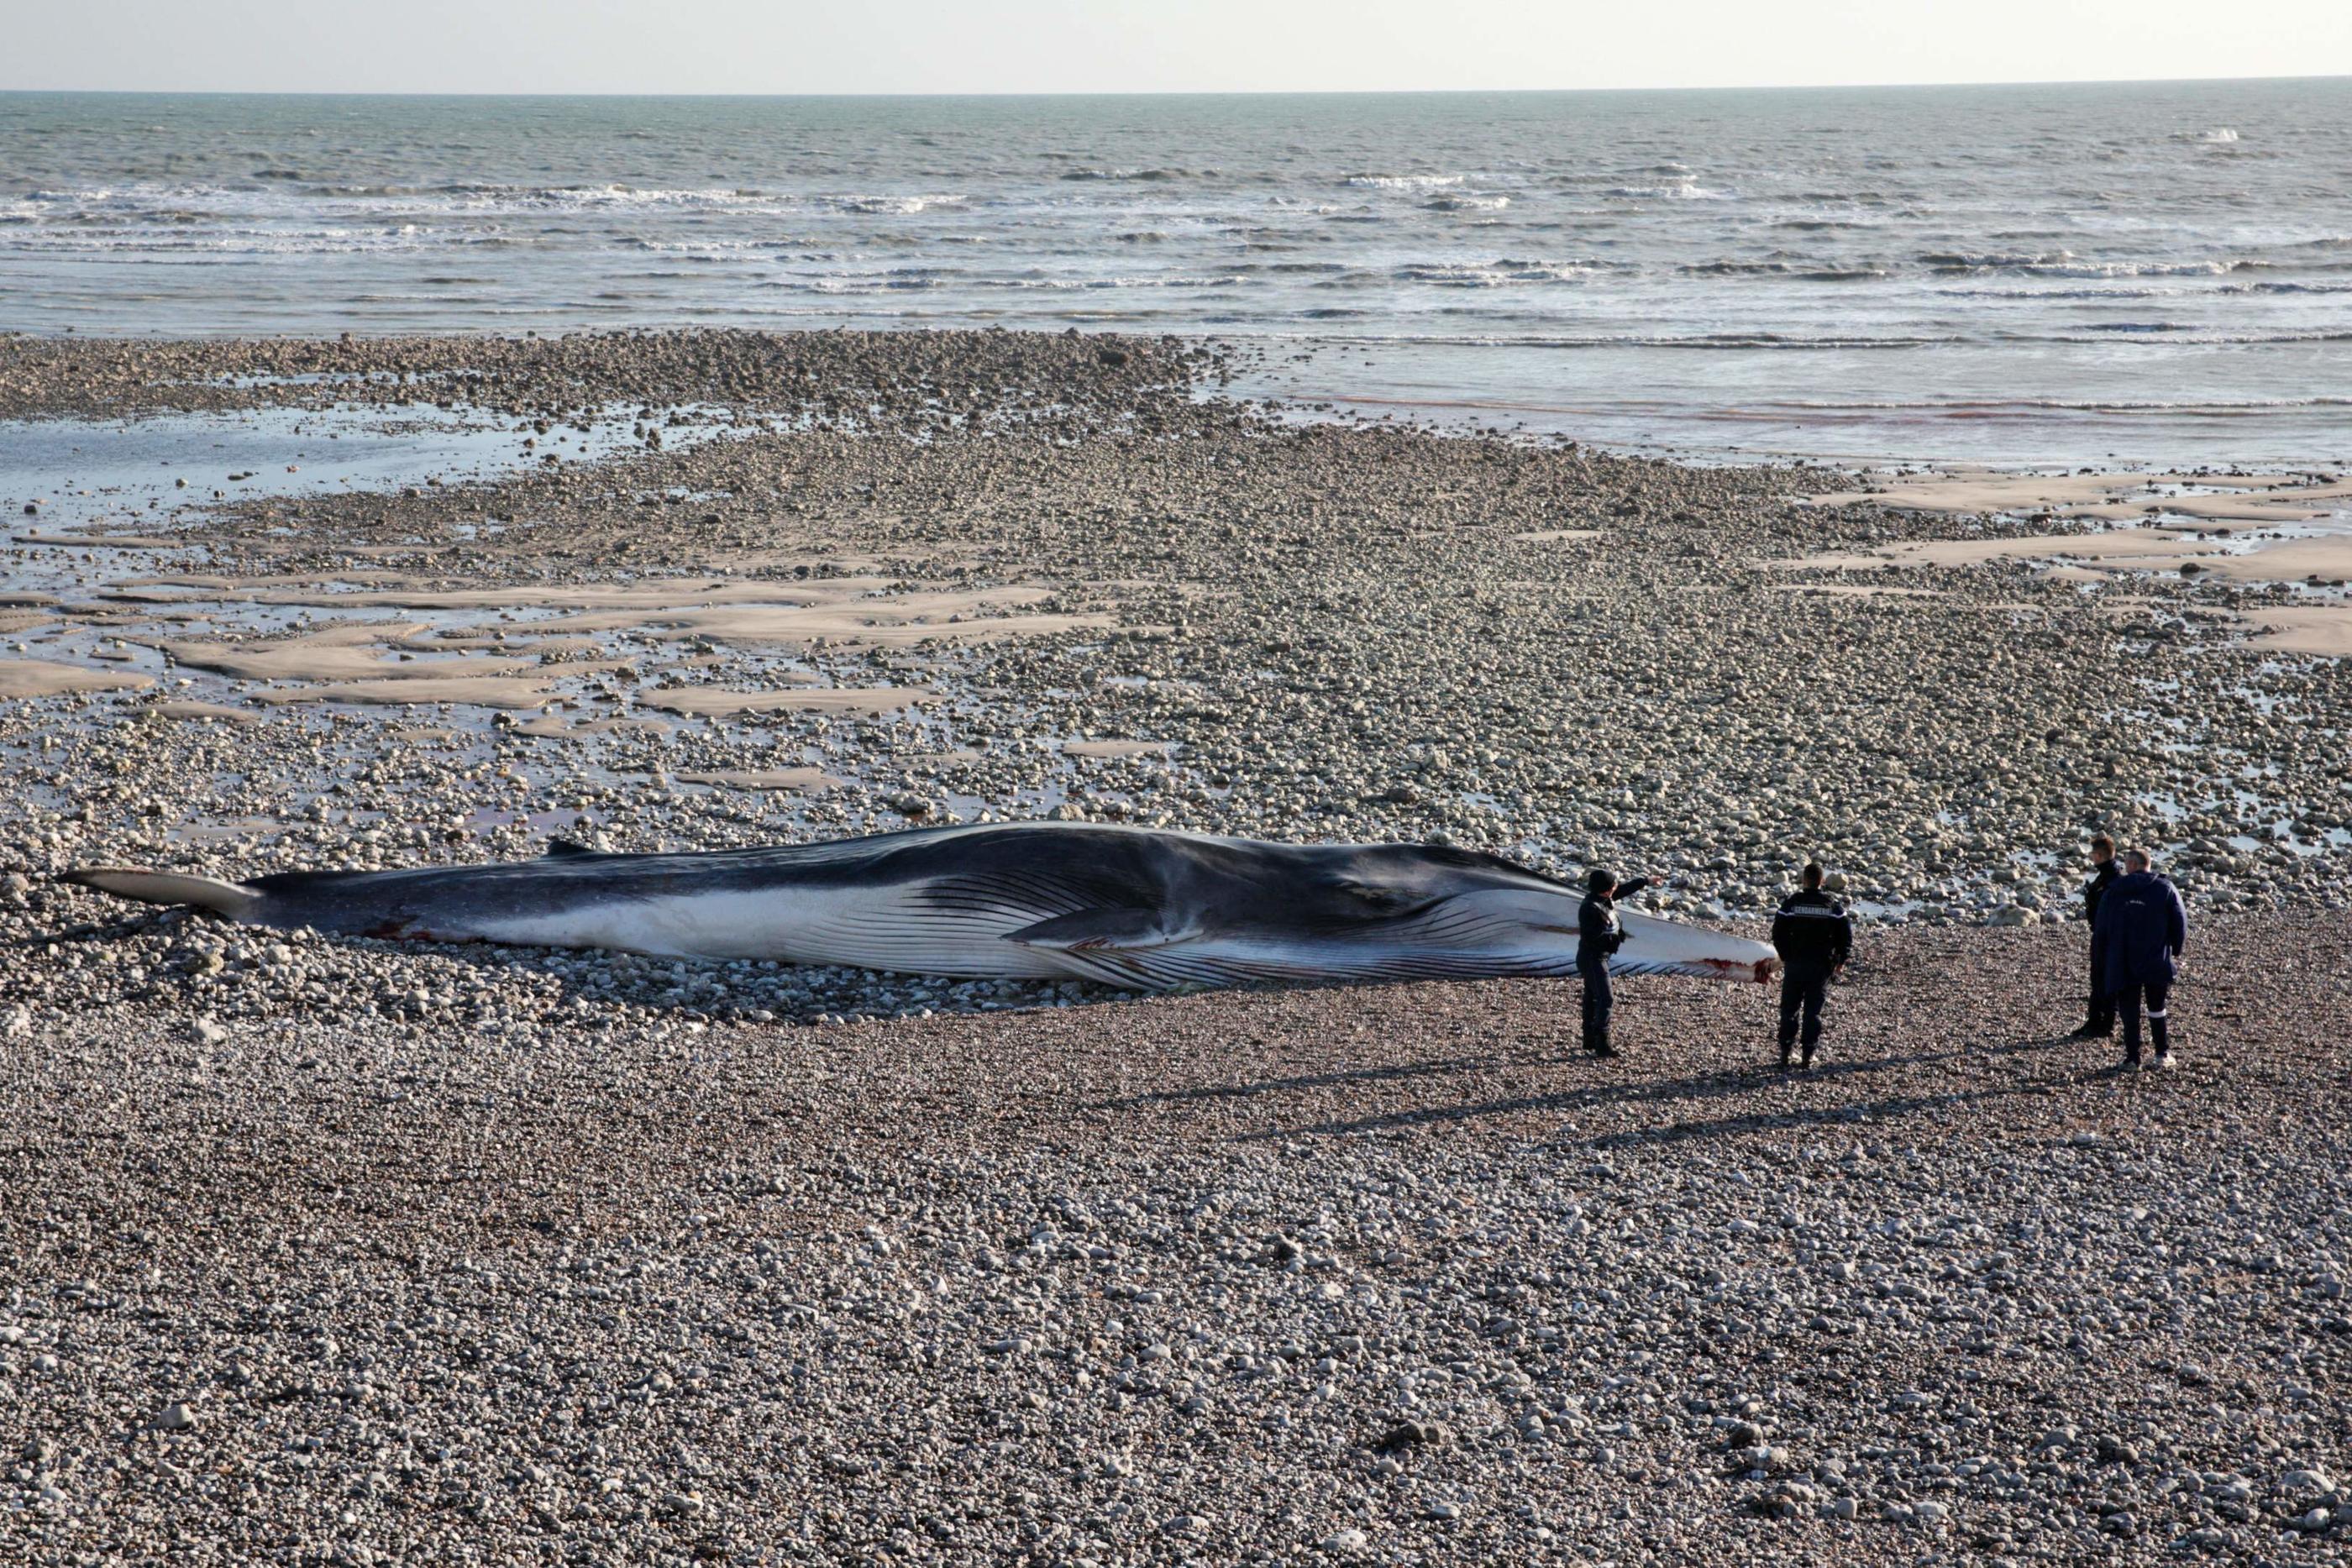 La baleine s'est échouée mercredi dernier sur la plage de Saint-Valéry-en-Caux, mais n'a pas pu être déplacée. AFP/Lou Benoist